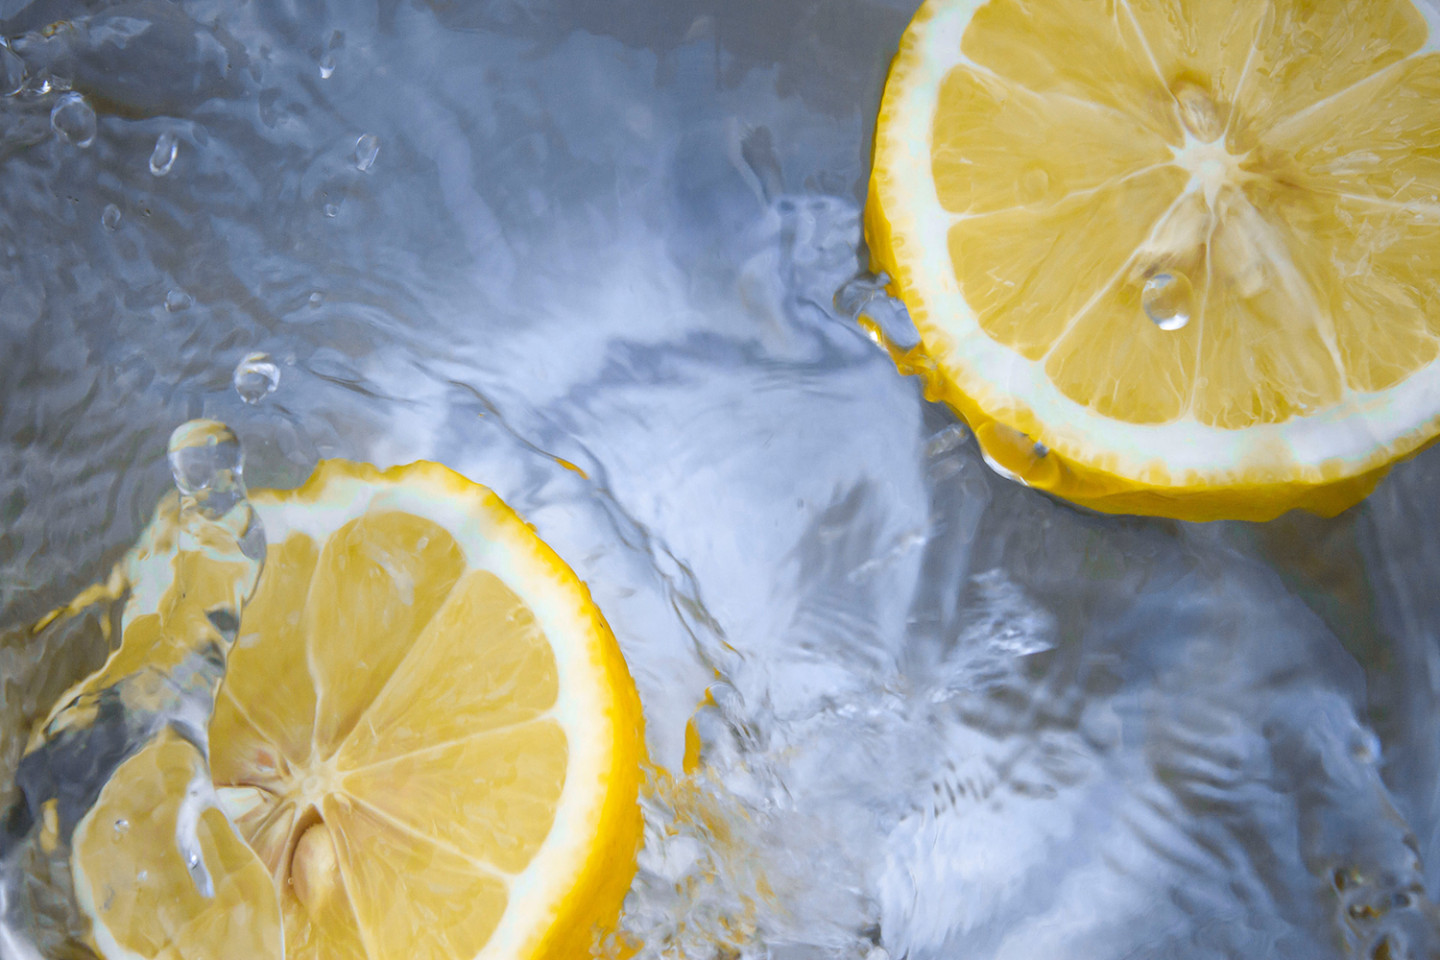 Вода, кубик льда или ломтик лимона — популярные средства при борьбе с икотой